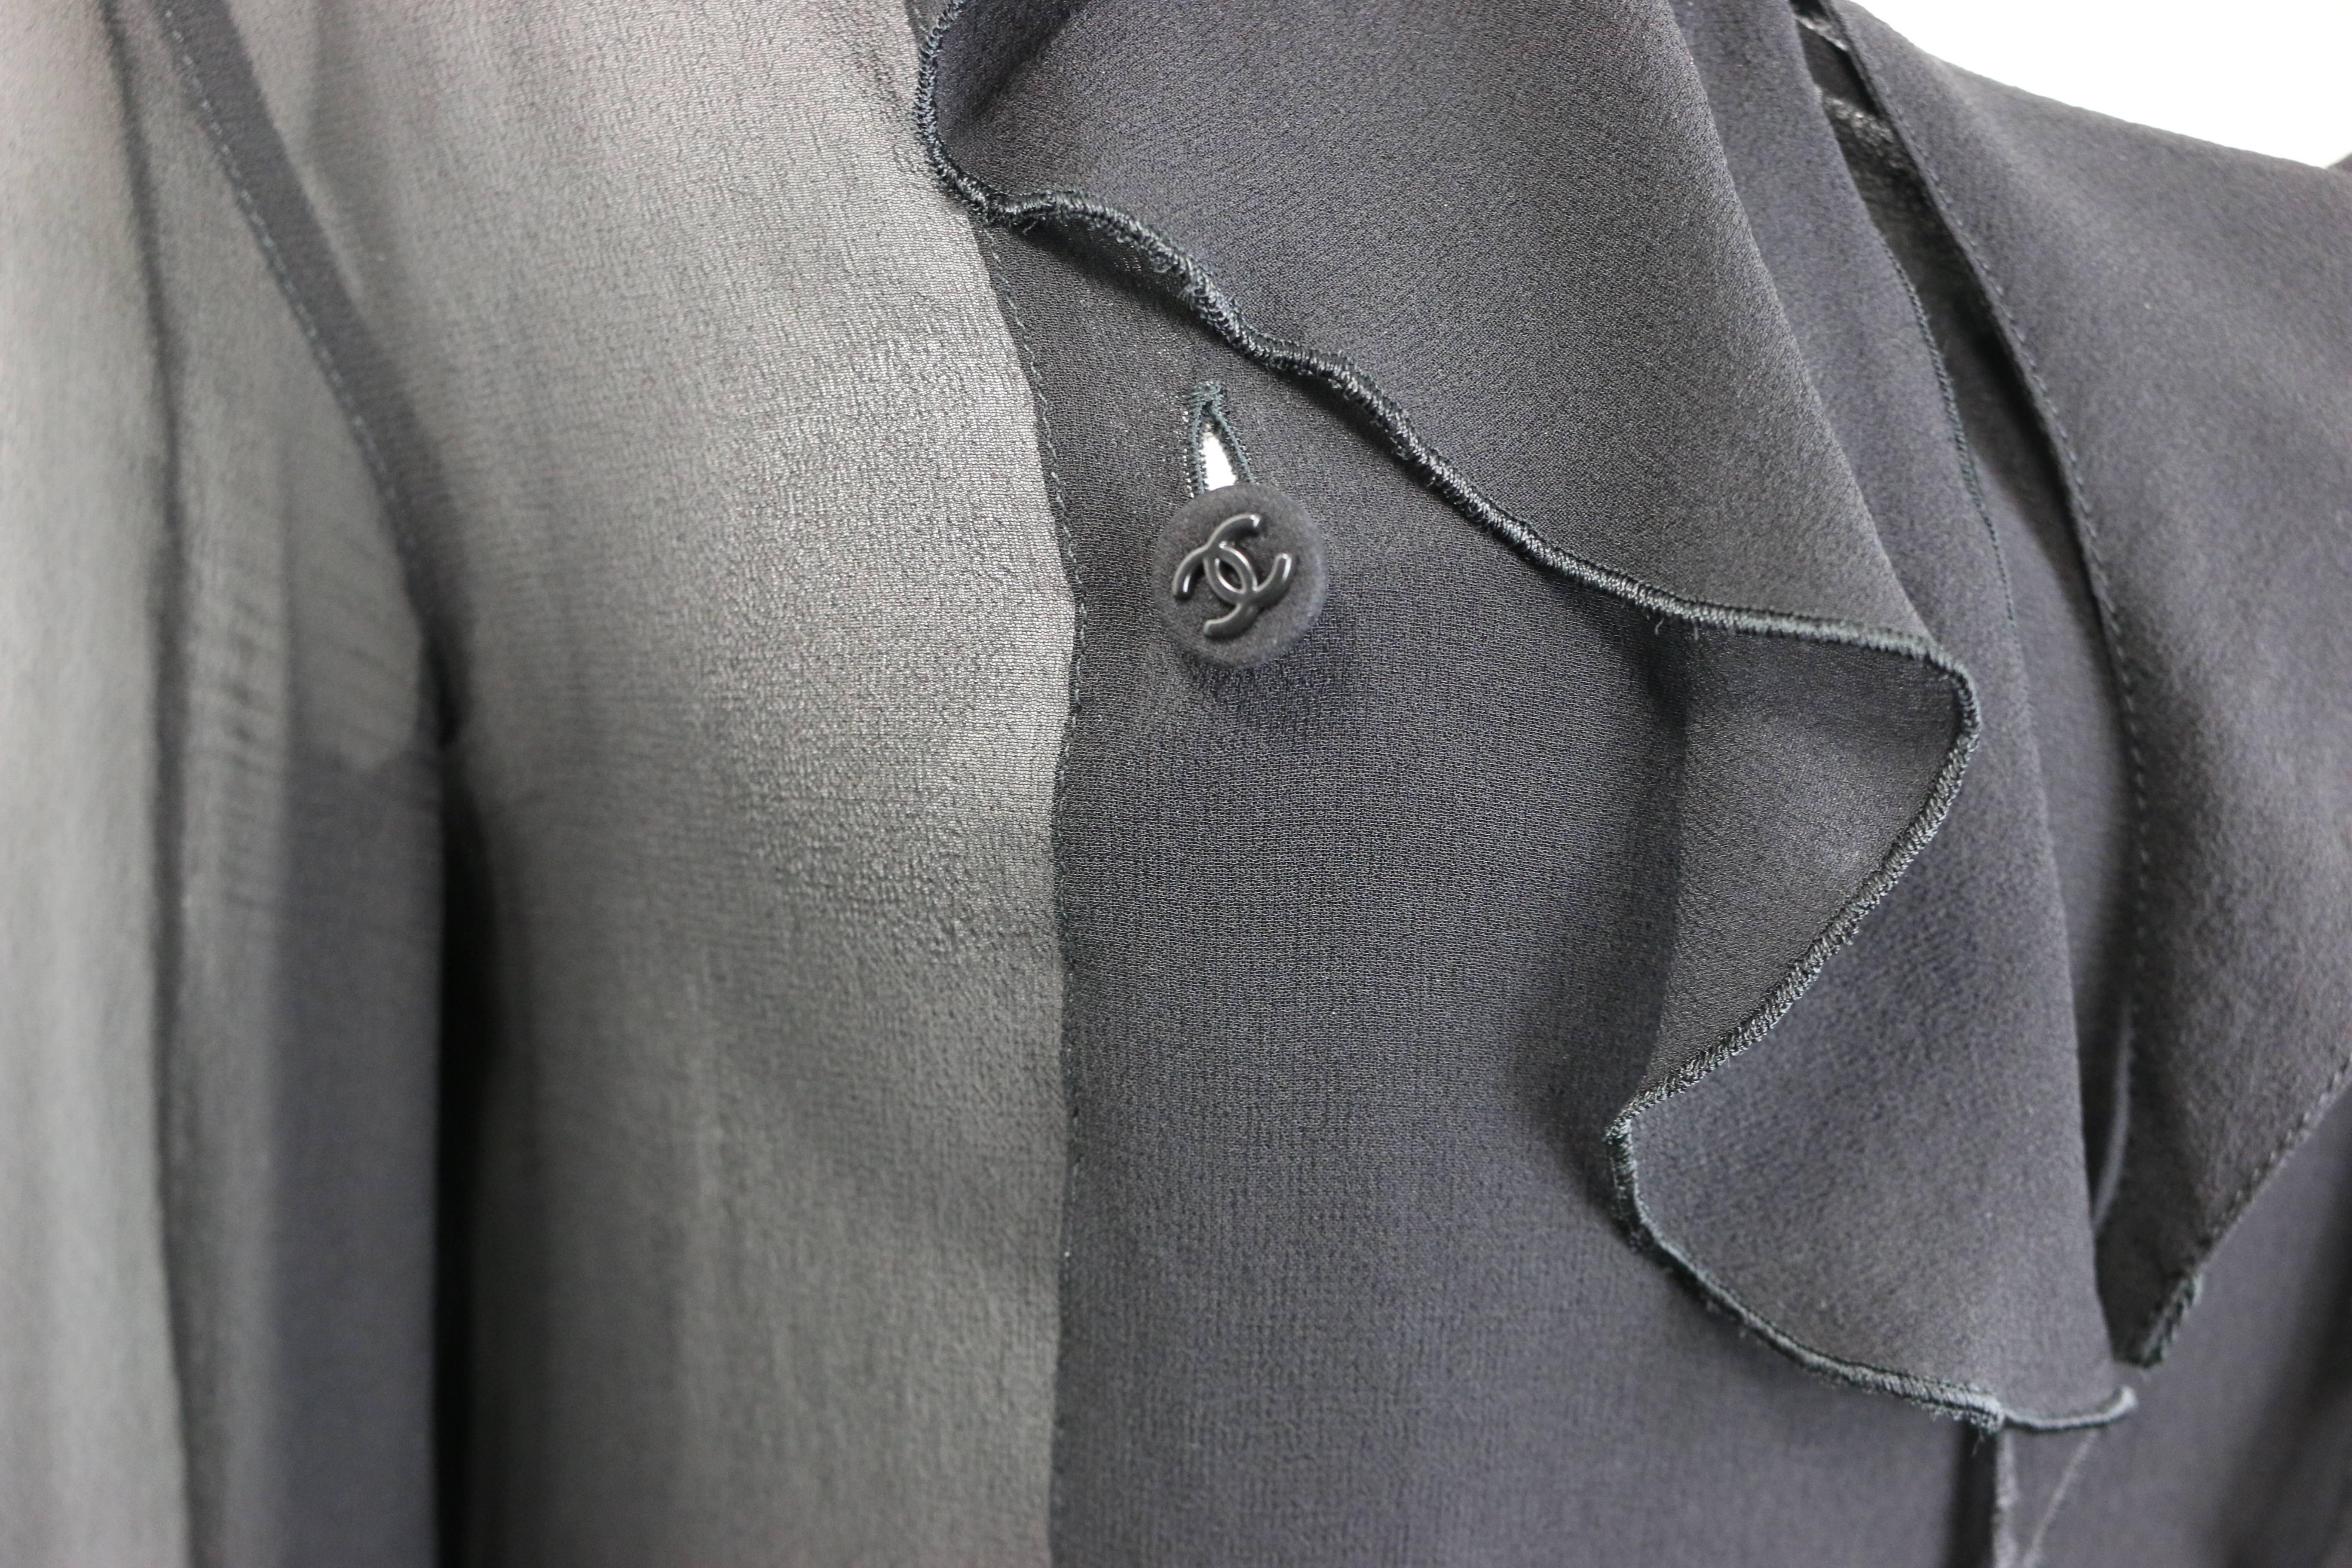 - Vintage Chanel schwarze Seidenspitzen-Bluse mit Rüschen aus der Herbstkollektion 1997. Diese Bluse ist durchsichtig und sieht toll aus für einen Abend oder mit Jeans und T-Shirt darunter, wenn die Bluse offen ist. 

- Mit acht schwarzen